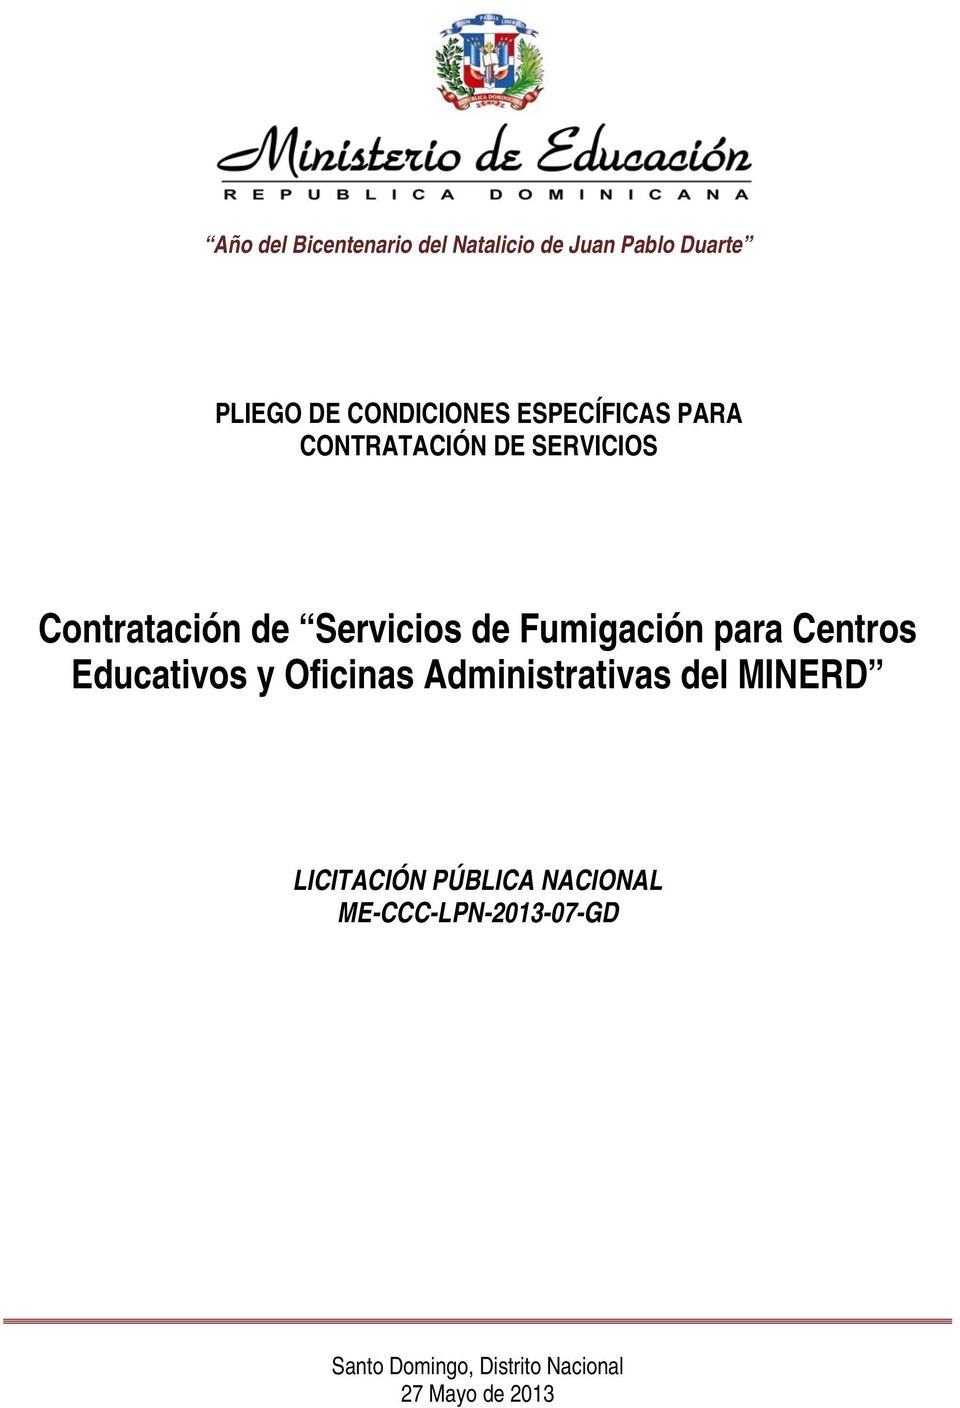 Fumigación para Centros Educativos y Oficinas Administrativas del MINERD